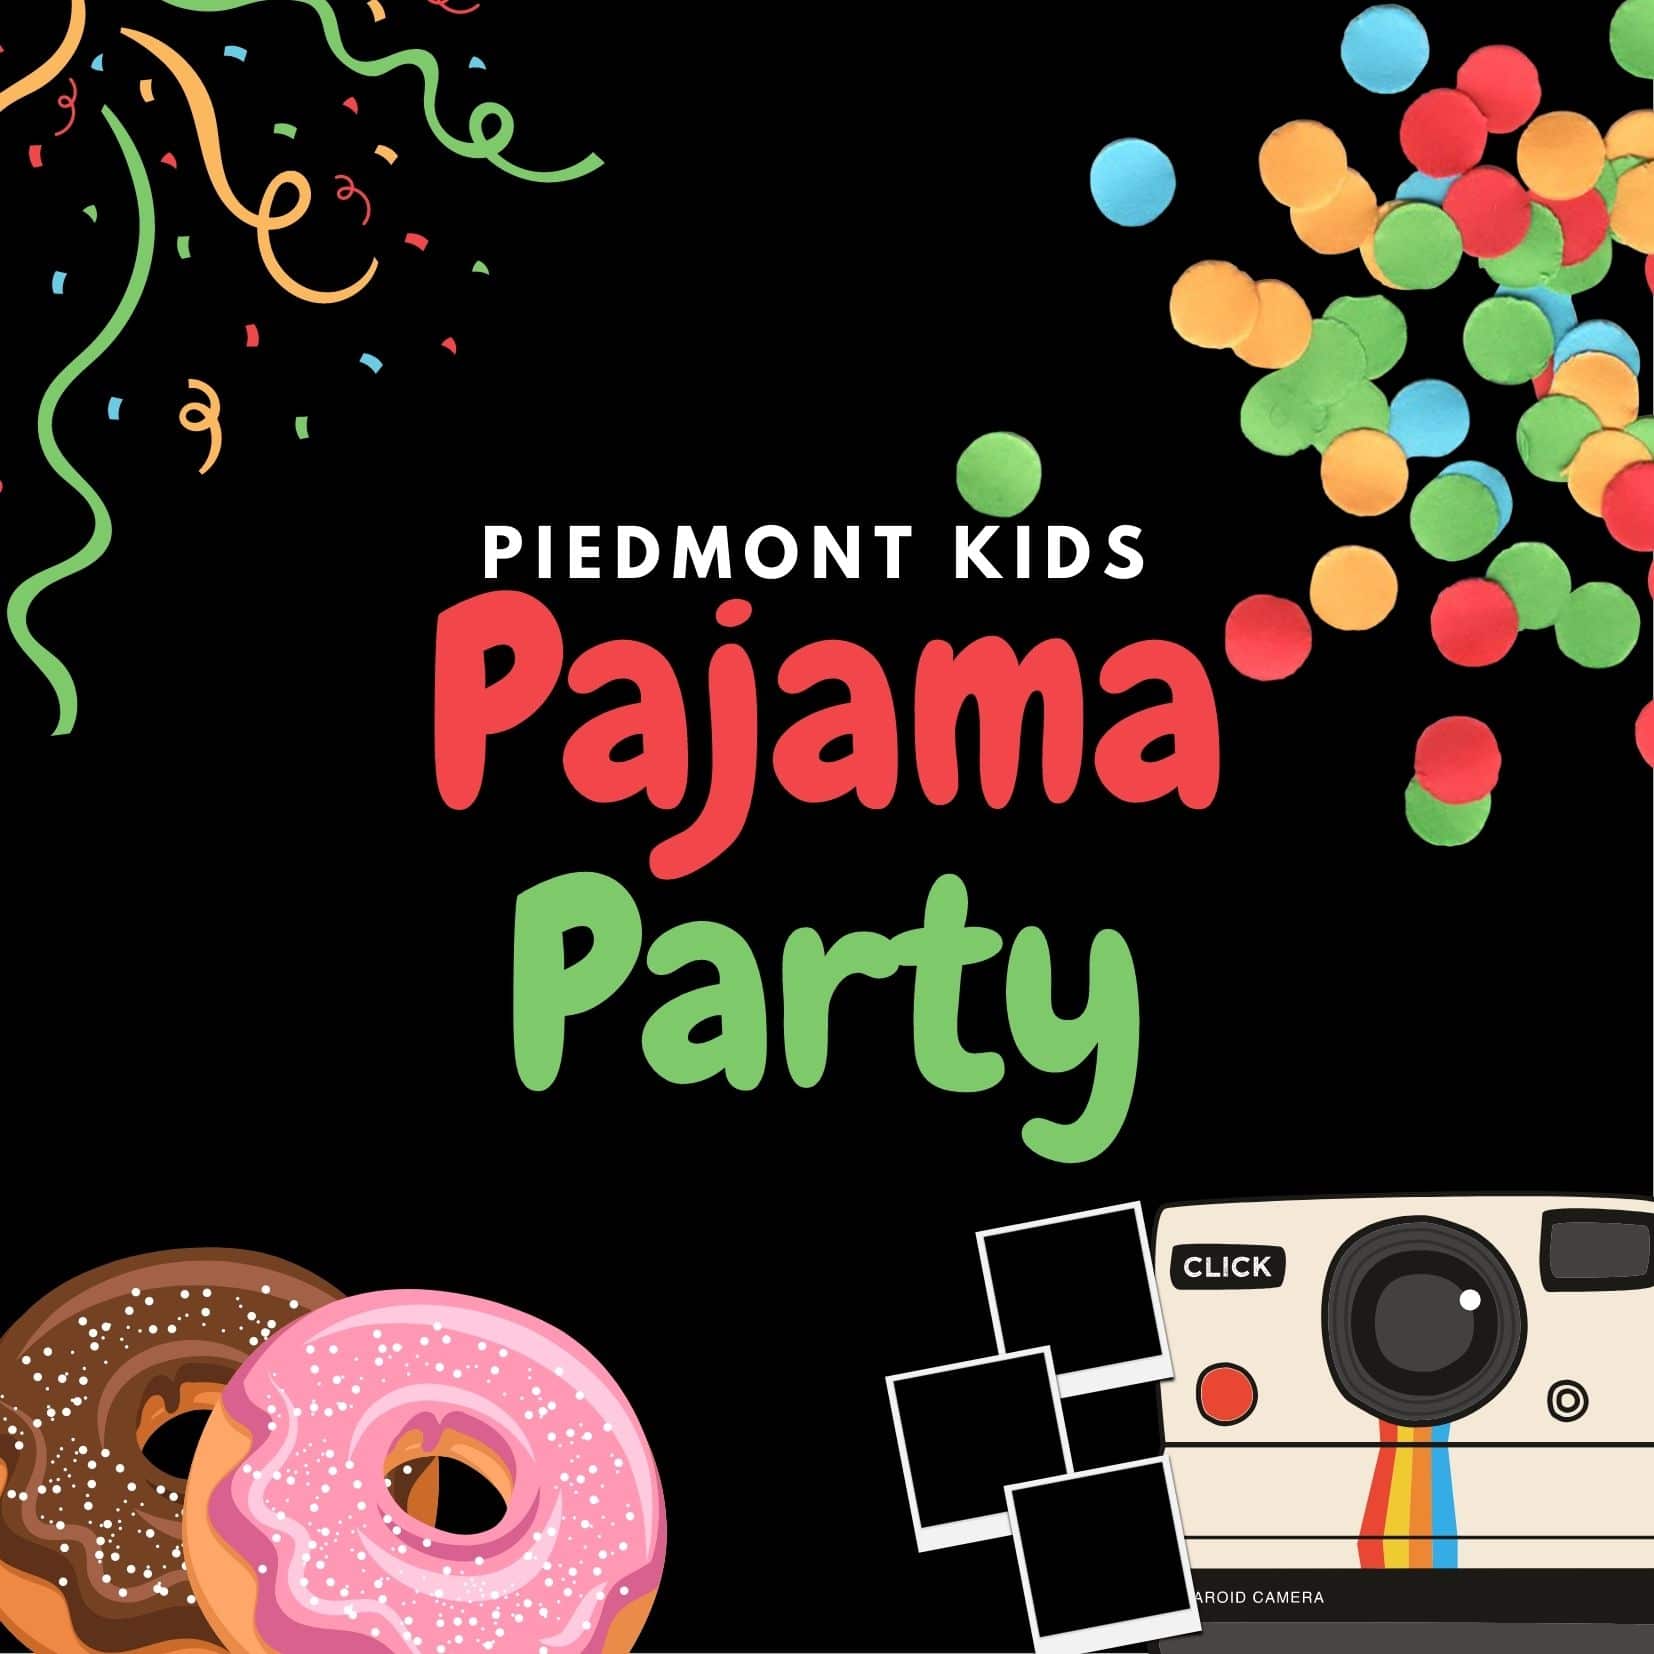 Piedmont Kids Pajama Party